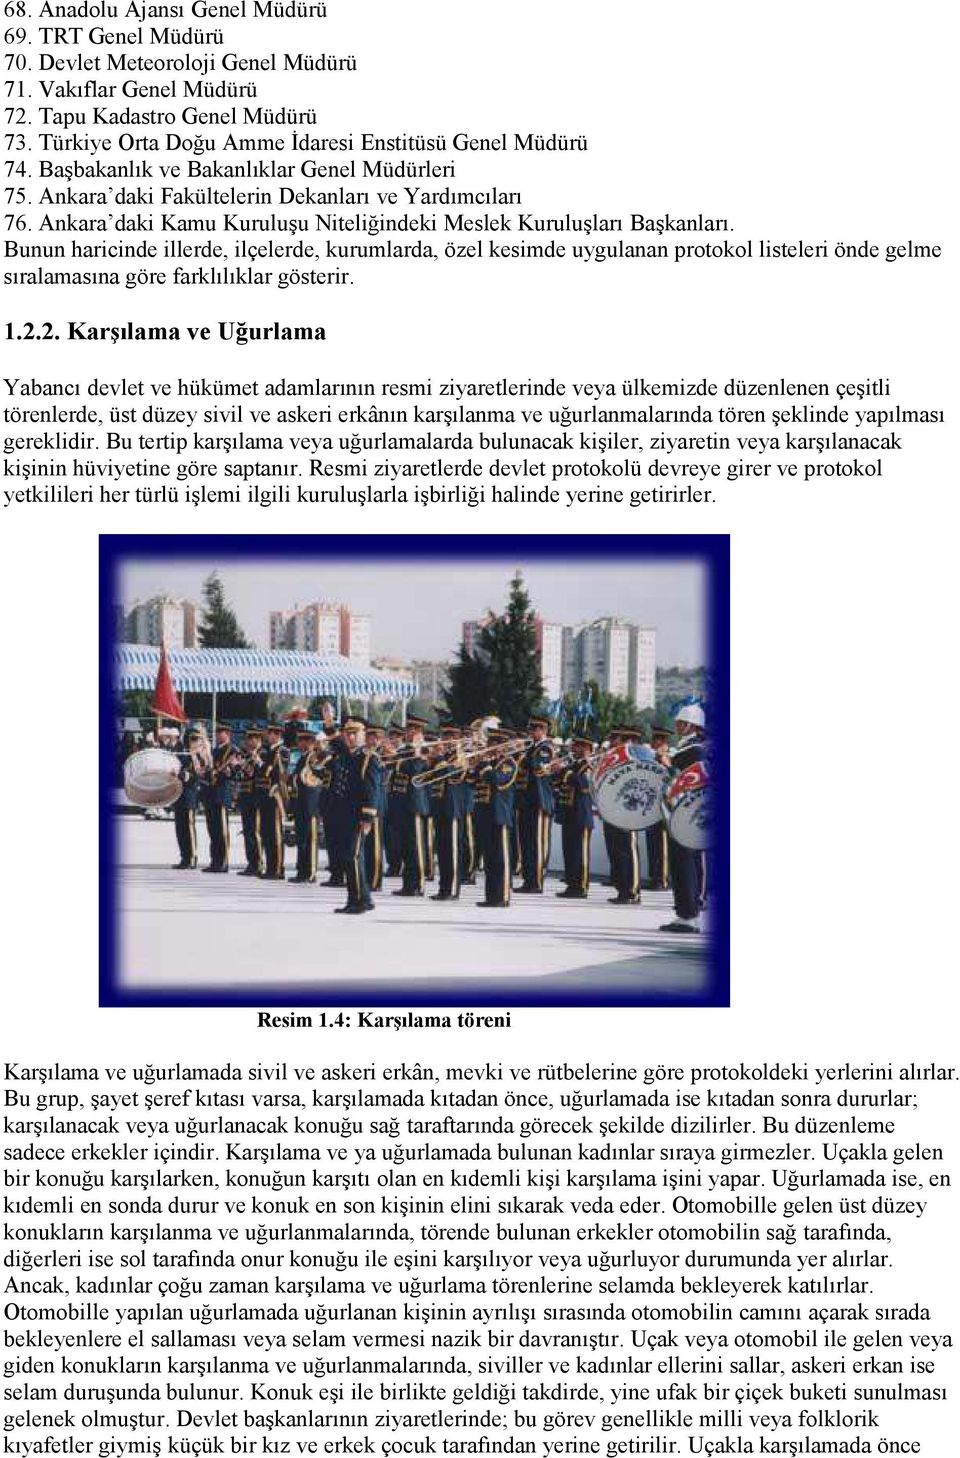 Ankara daki Kamu Kuruluşu Niteliğindeki Meslek Kuruluşları Başkanları.